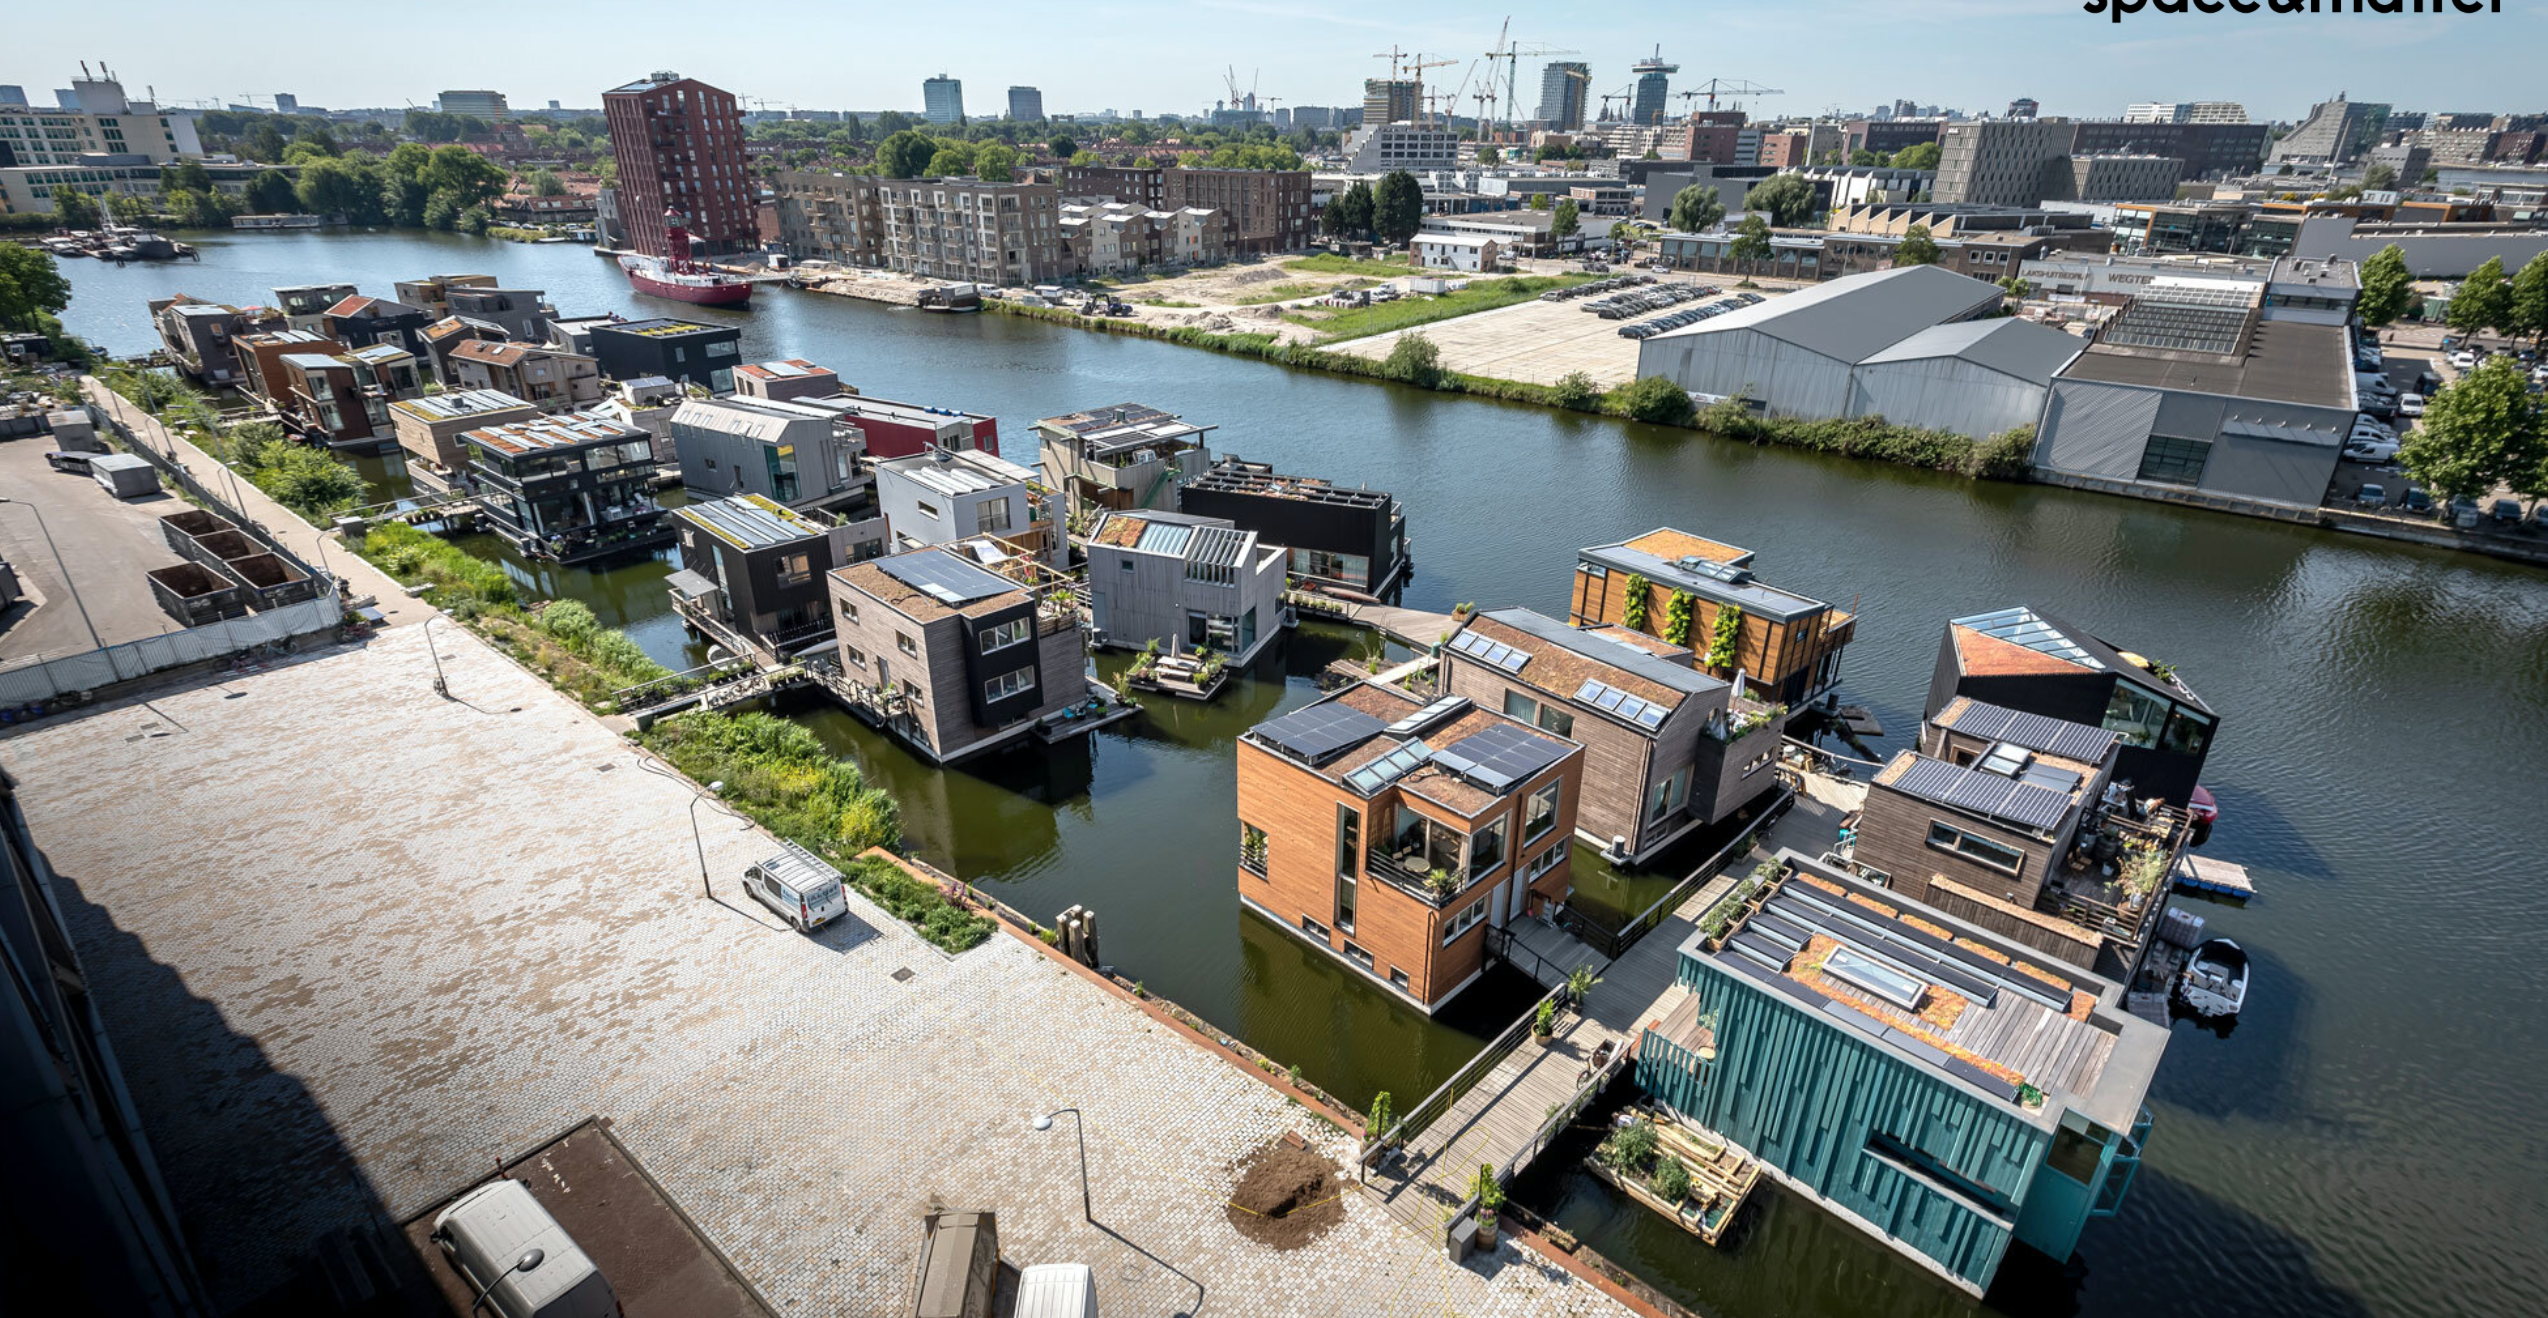 schoonschip-nuevo-barrio-flotante-y-sostenible-en-amsterdam-4-alt